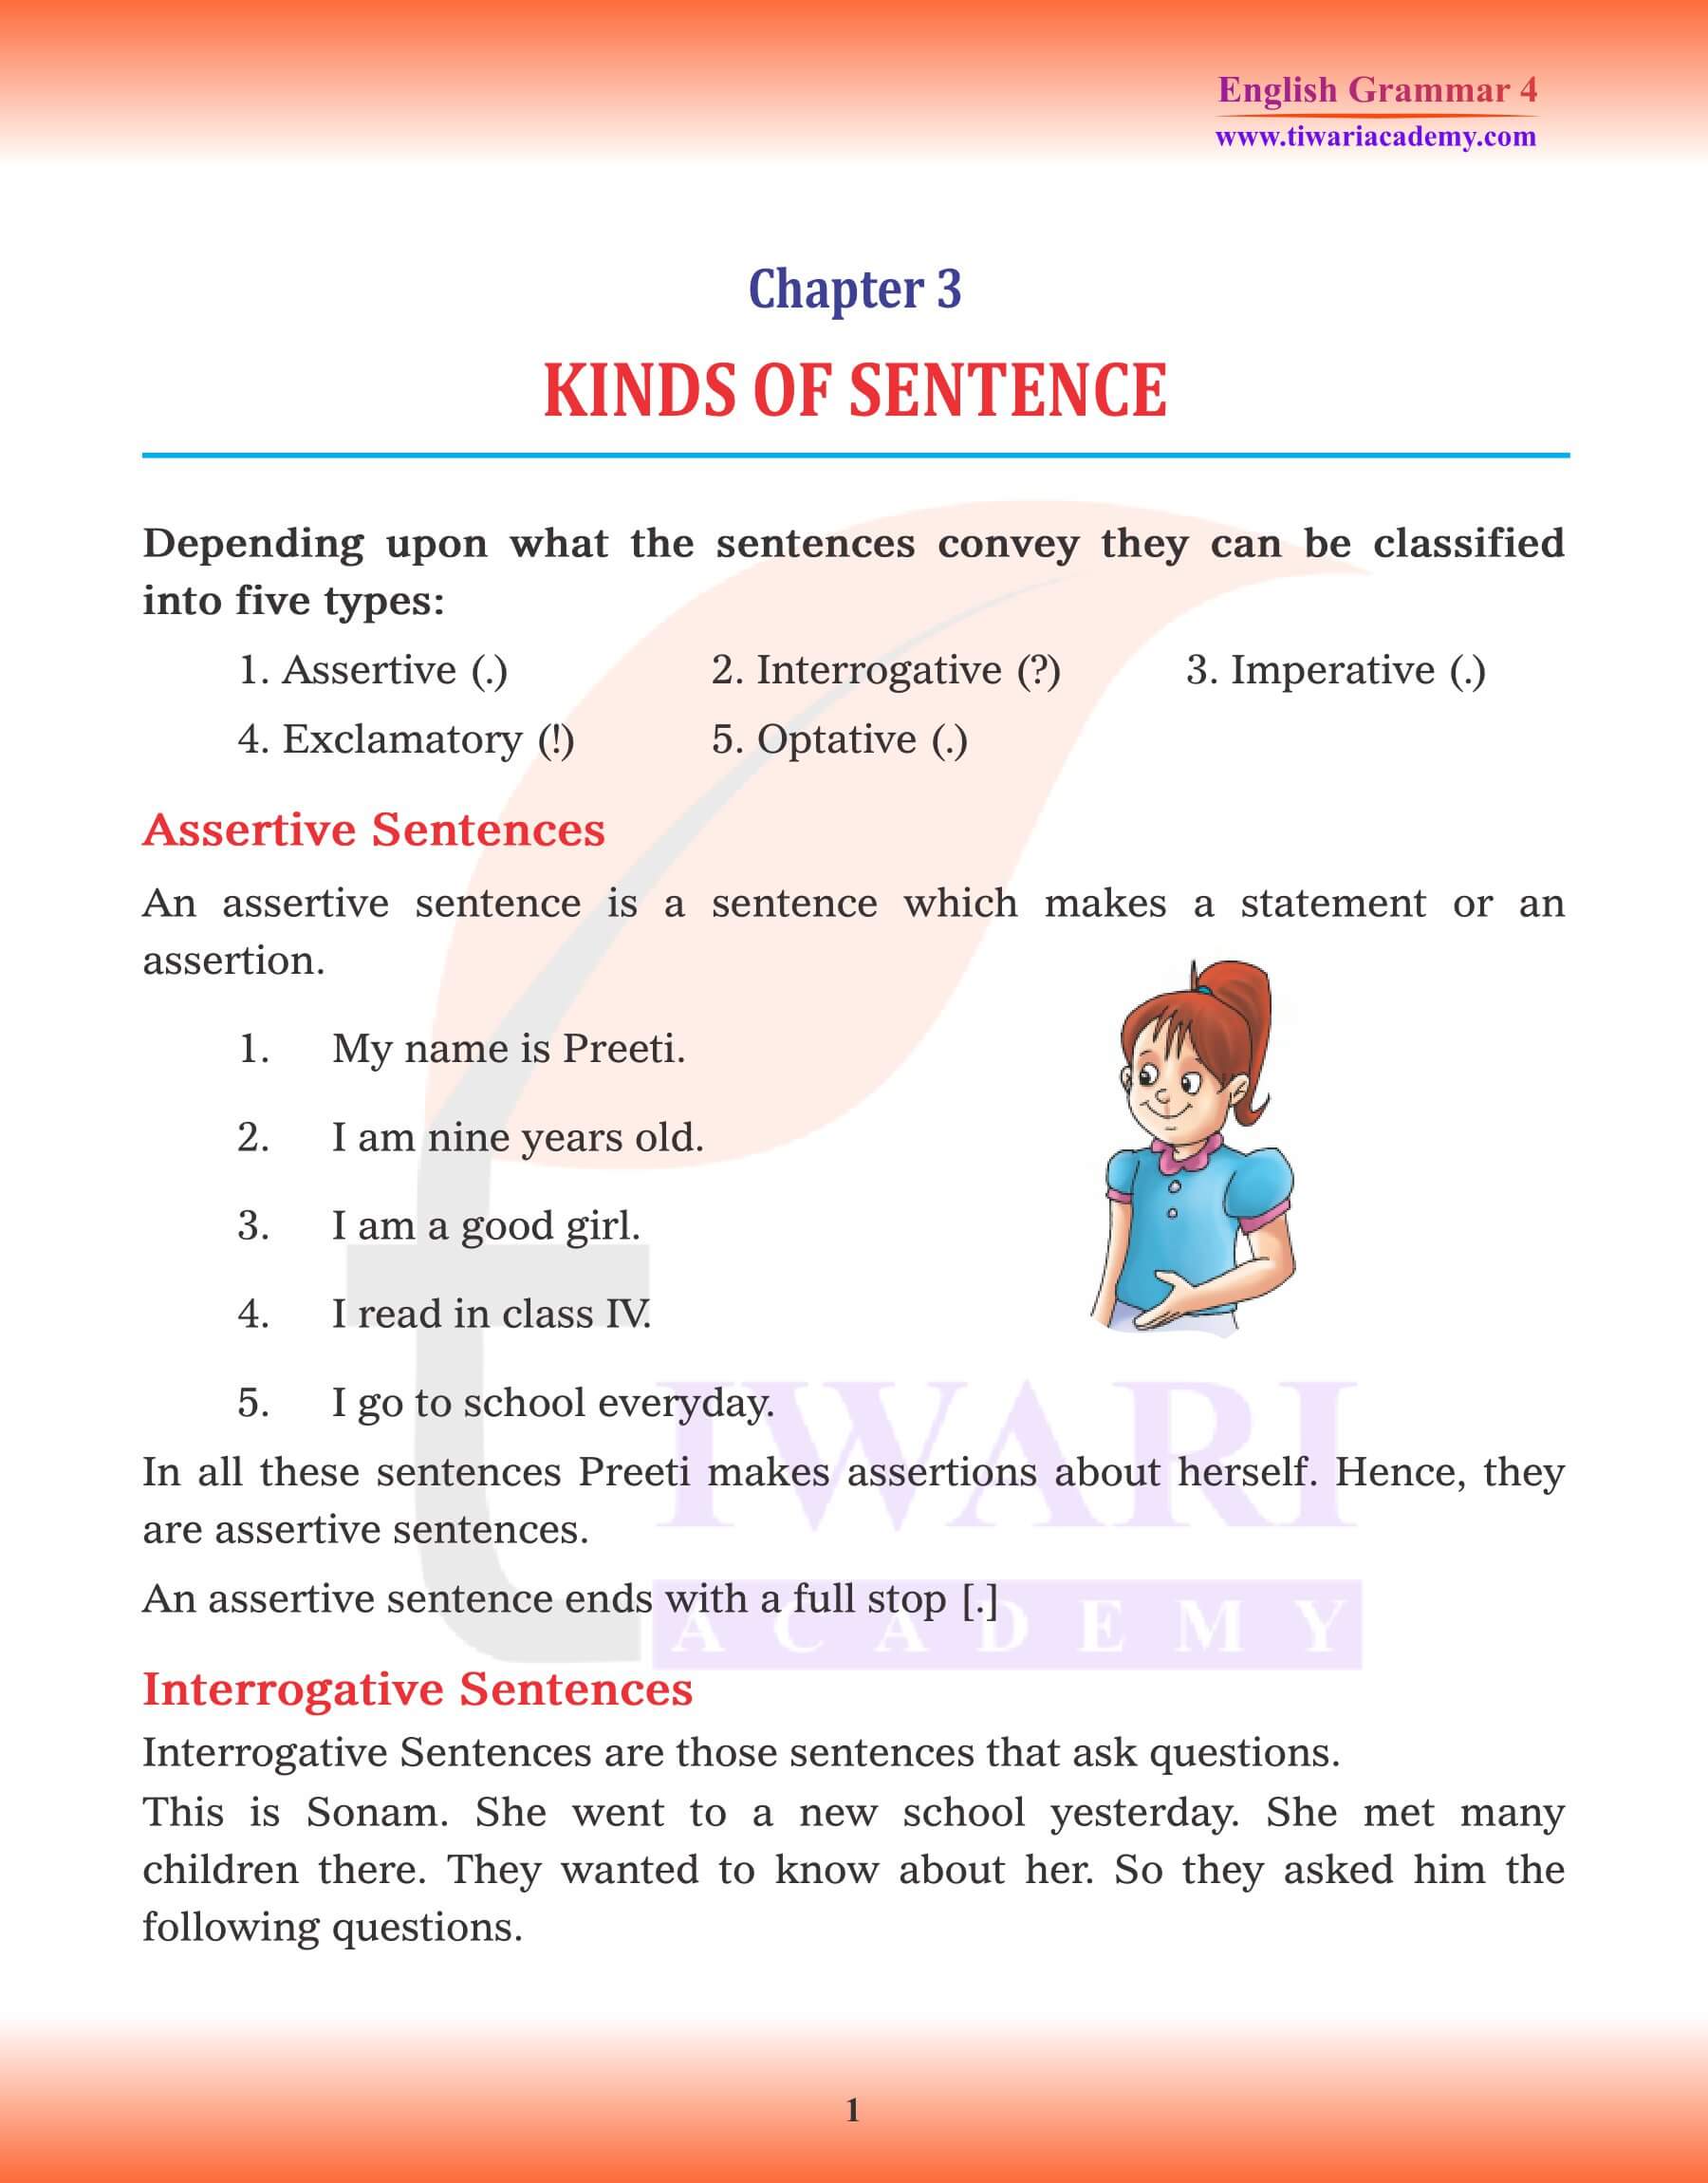 Class 4 English Grammar Kinds of Sentence